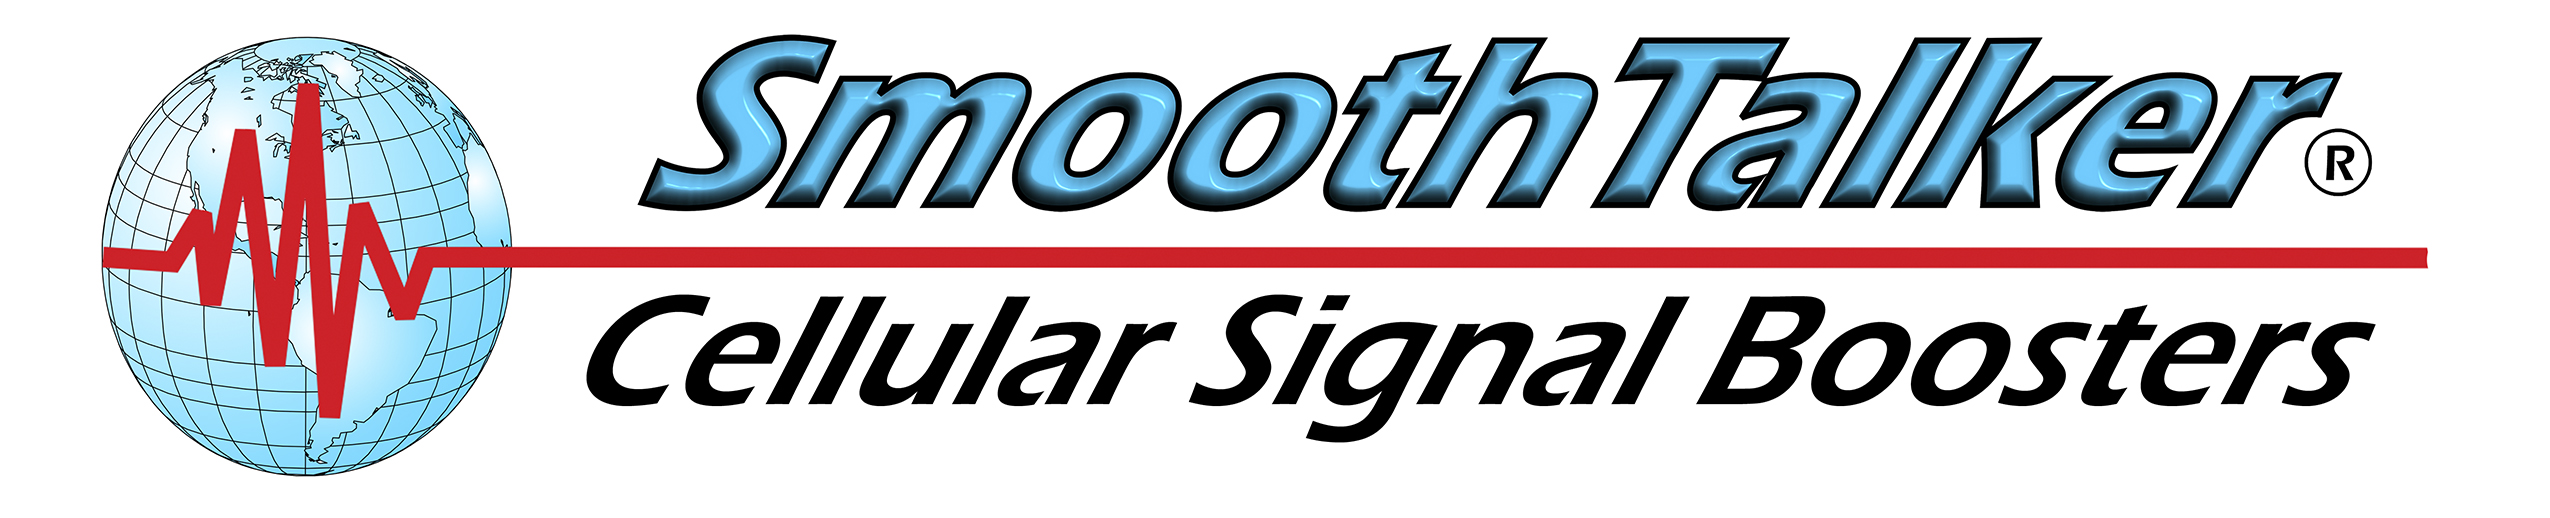 SmoothTalker Cellular Signal Booster logo